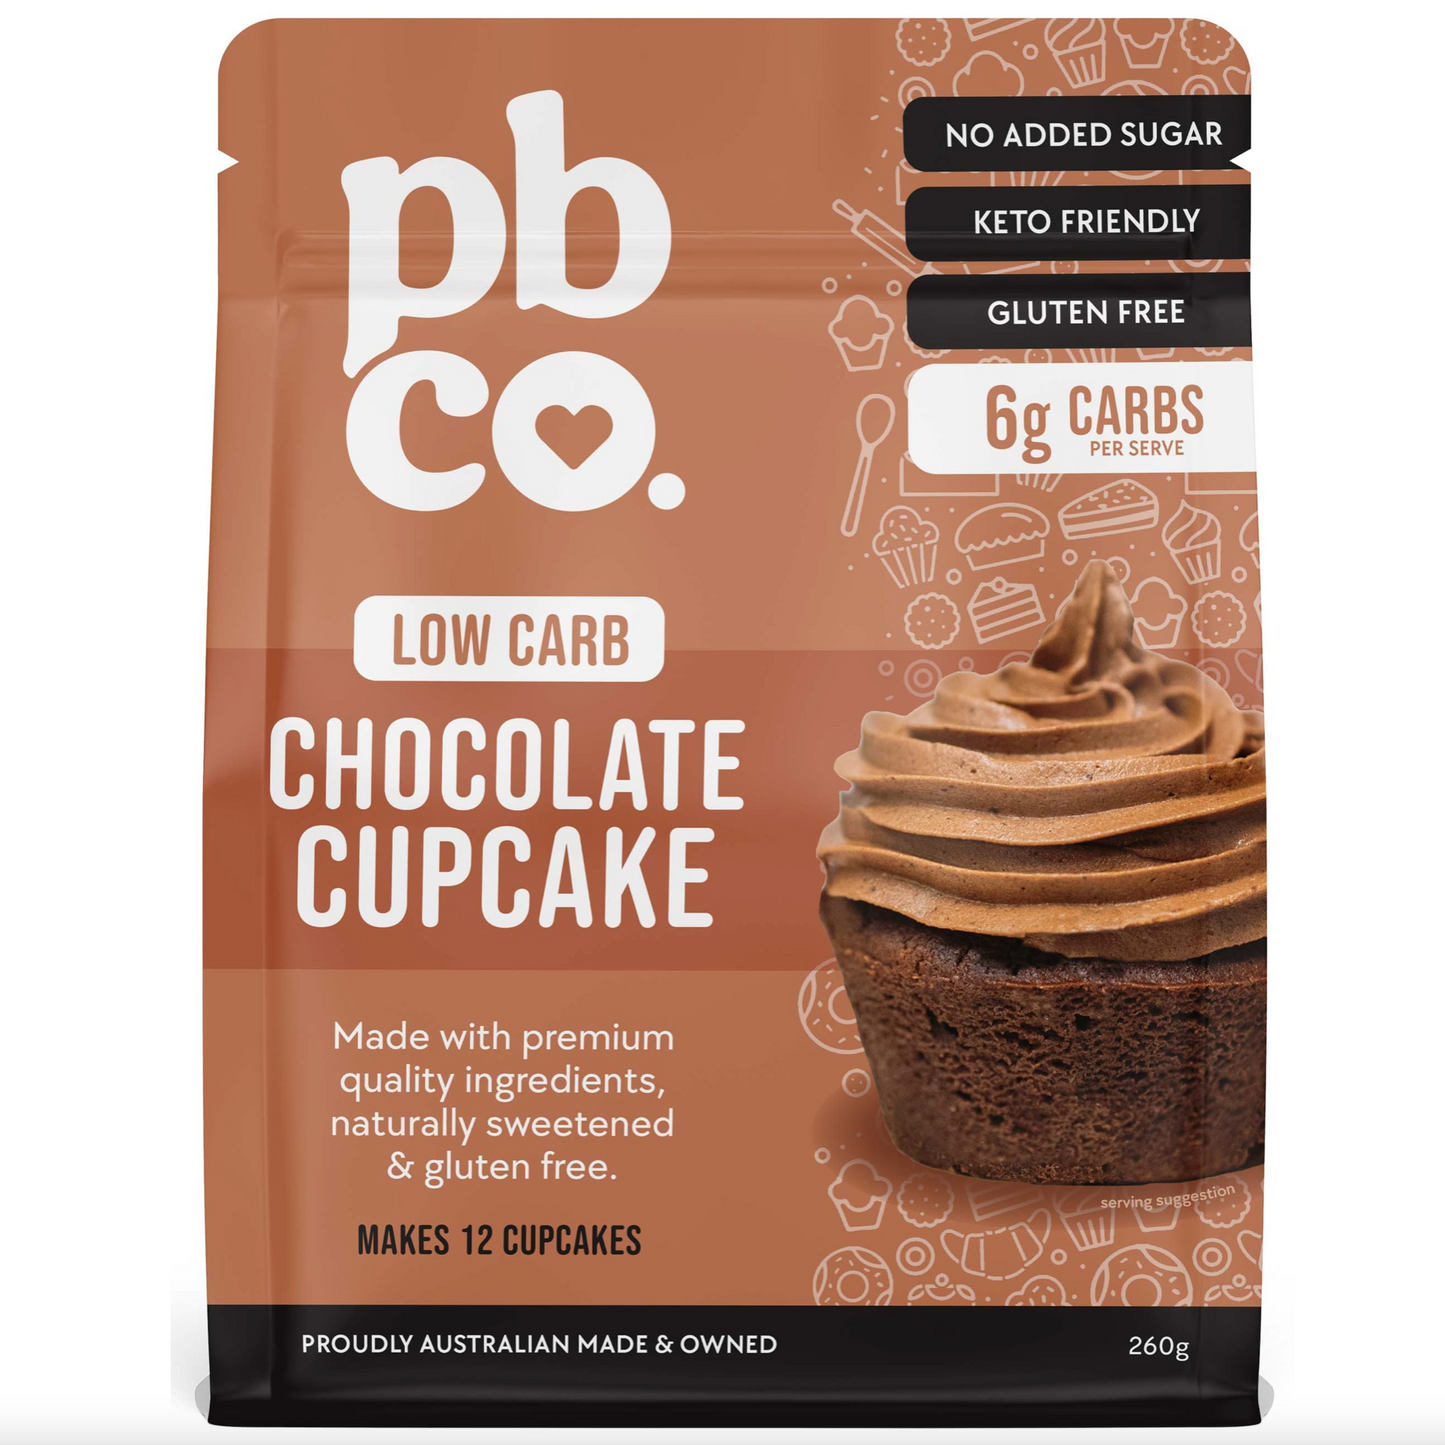 PBCo Low Carb Mix 260g, Chocolate Cupcake Mix